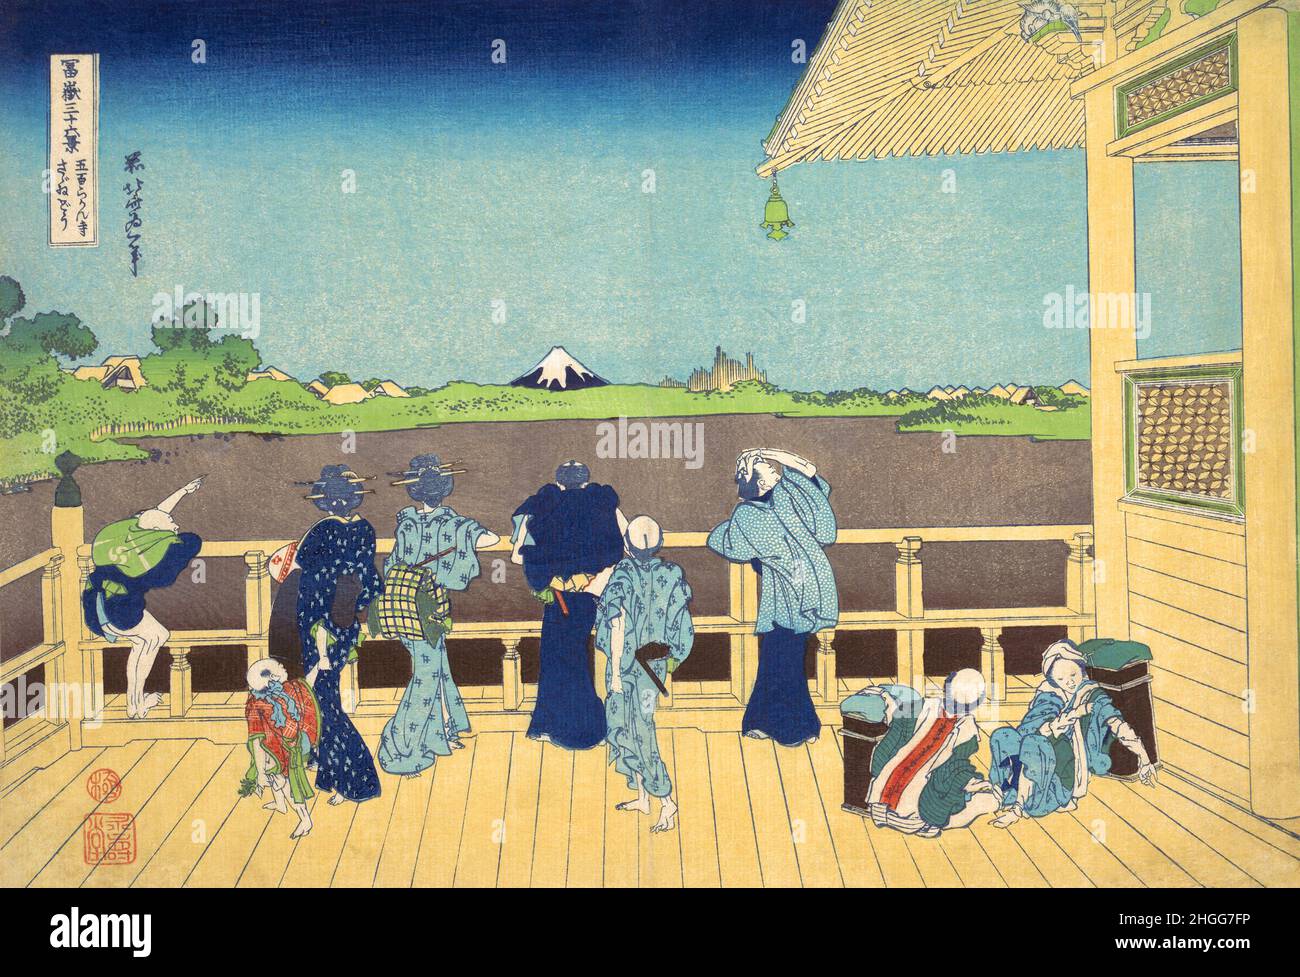 Giappone: “Sazai Hall - Tempio del Cinquecento Rakan”. Ukiyo-e stampa in blocco della serie «trentasei viste del Monte Fuji» di Katsushika Hokusai (31 ottobre 1760 - 10 maggio 1849), 1830. “trentasei viste del Monte Fuji” è una serie di stampe in legno realizzate dall’artista giapponese Katsushika Hokusai. La serie raffigura il Monte Fuji in stagioni e condizioni meteorologiche diverse da una varietà di luoghi e distanze. Si compone di 46 stampe create tra il 1826 e il 1833. I primi 36 furono inclusi nella pubblicazione originale e, a causa della loro popolarità, ne furono aggiunti altri 10. Foto Stock